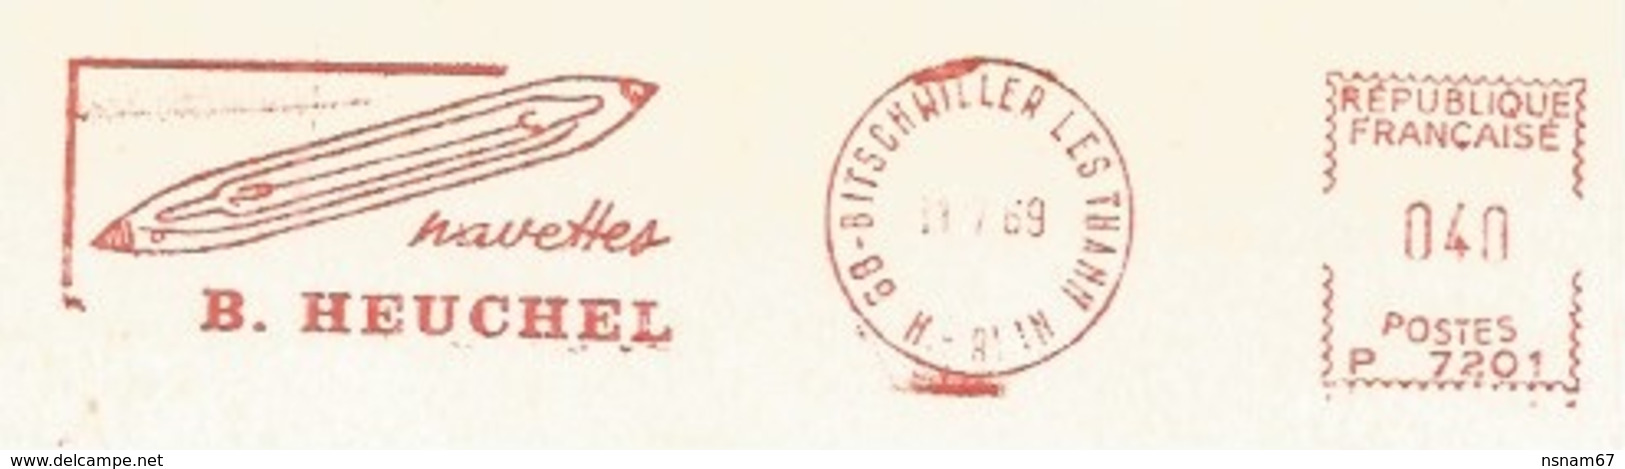 C533 - BITSCHWILLER LES THANN - 1969 - Entête Illustrée NAVETTES B. HEUCHEL - - Briefe U. Dokumente